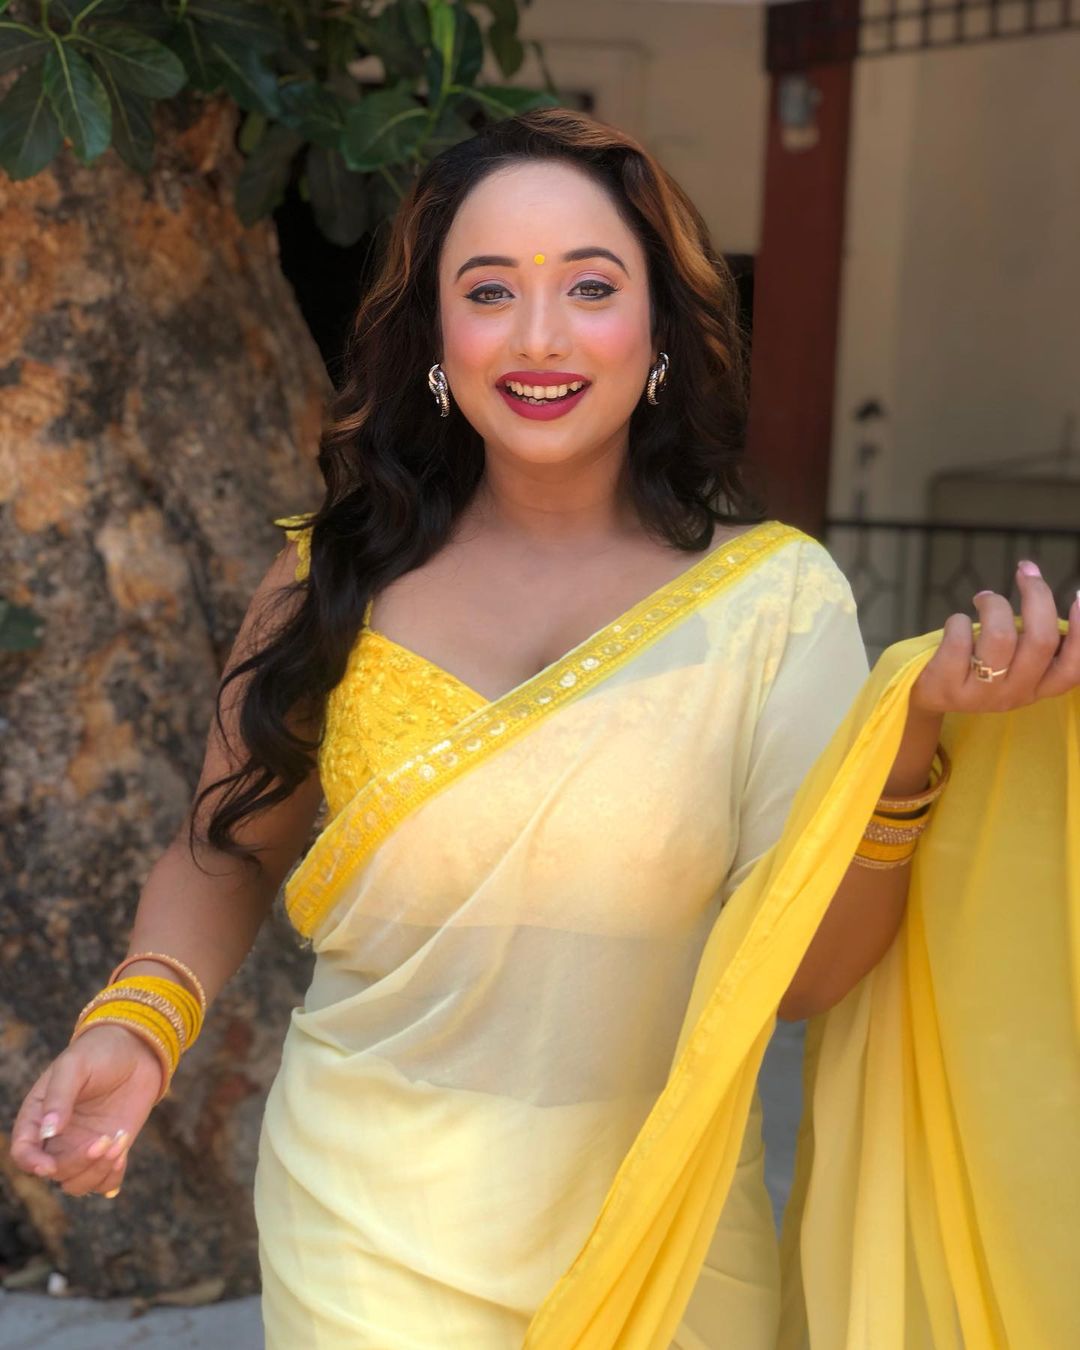 In Photos: भोजपुरी एक्ट्रेस रानी चटर्जी ने पीली साड़ी में बरपाया कहर, कातिलाना अदाओं से फिर जीता फैंस का दिल